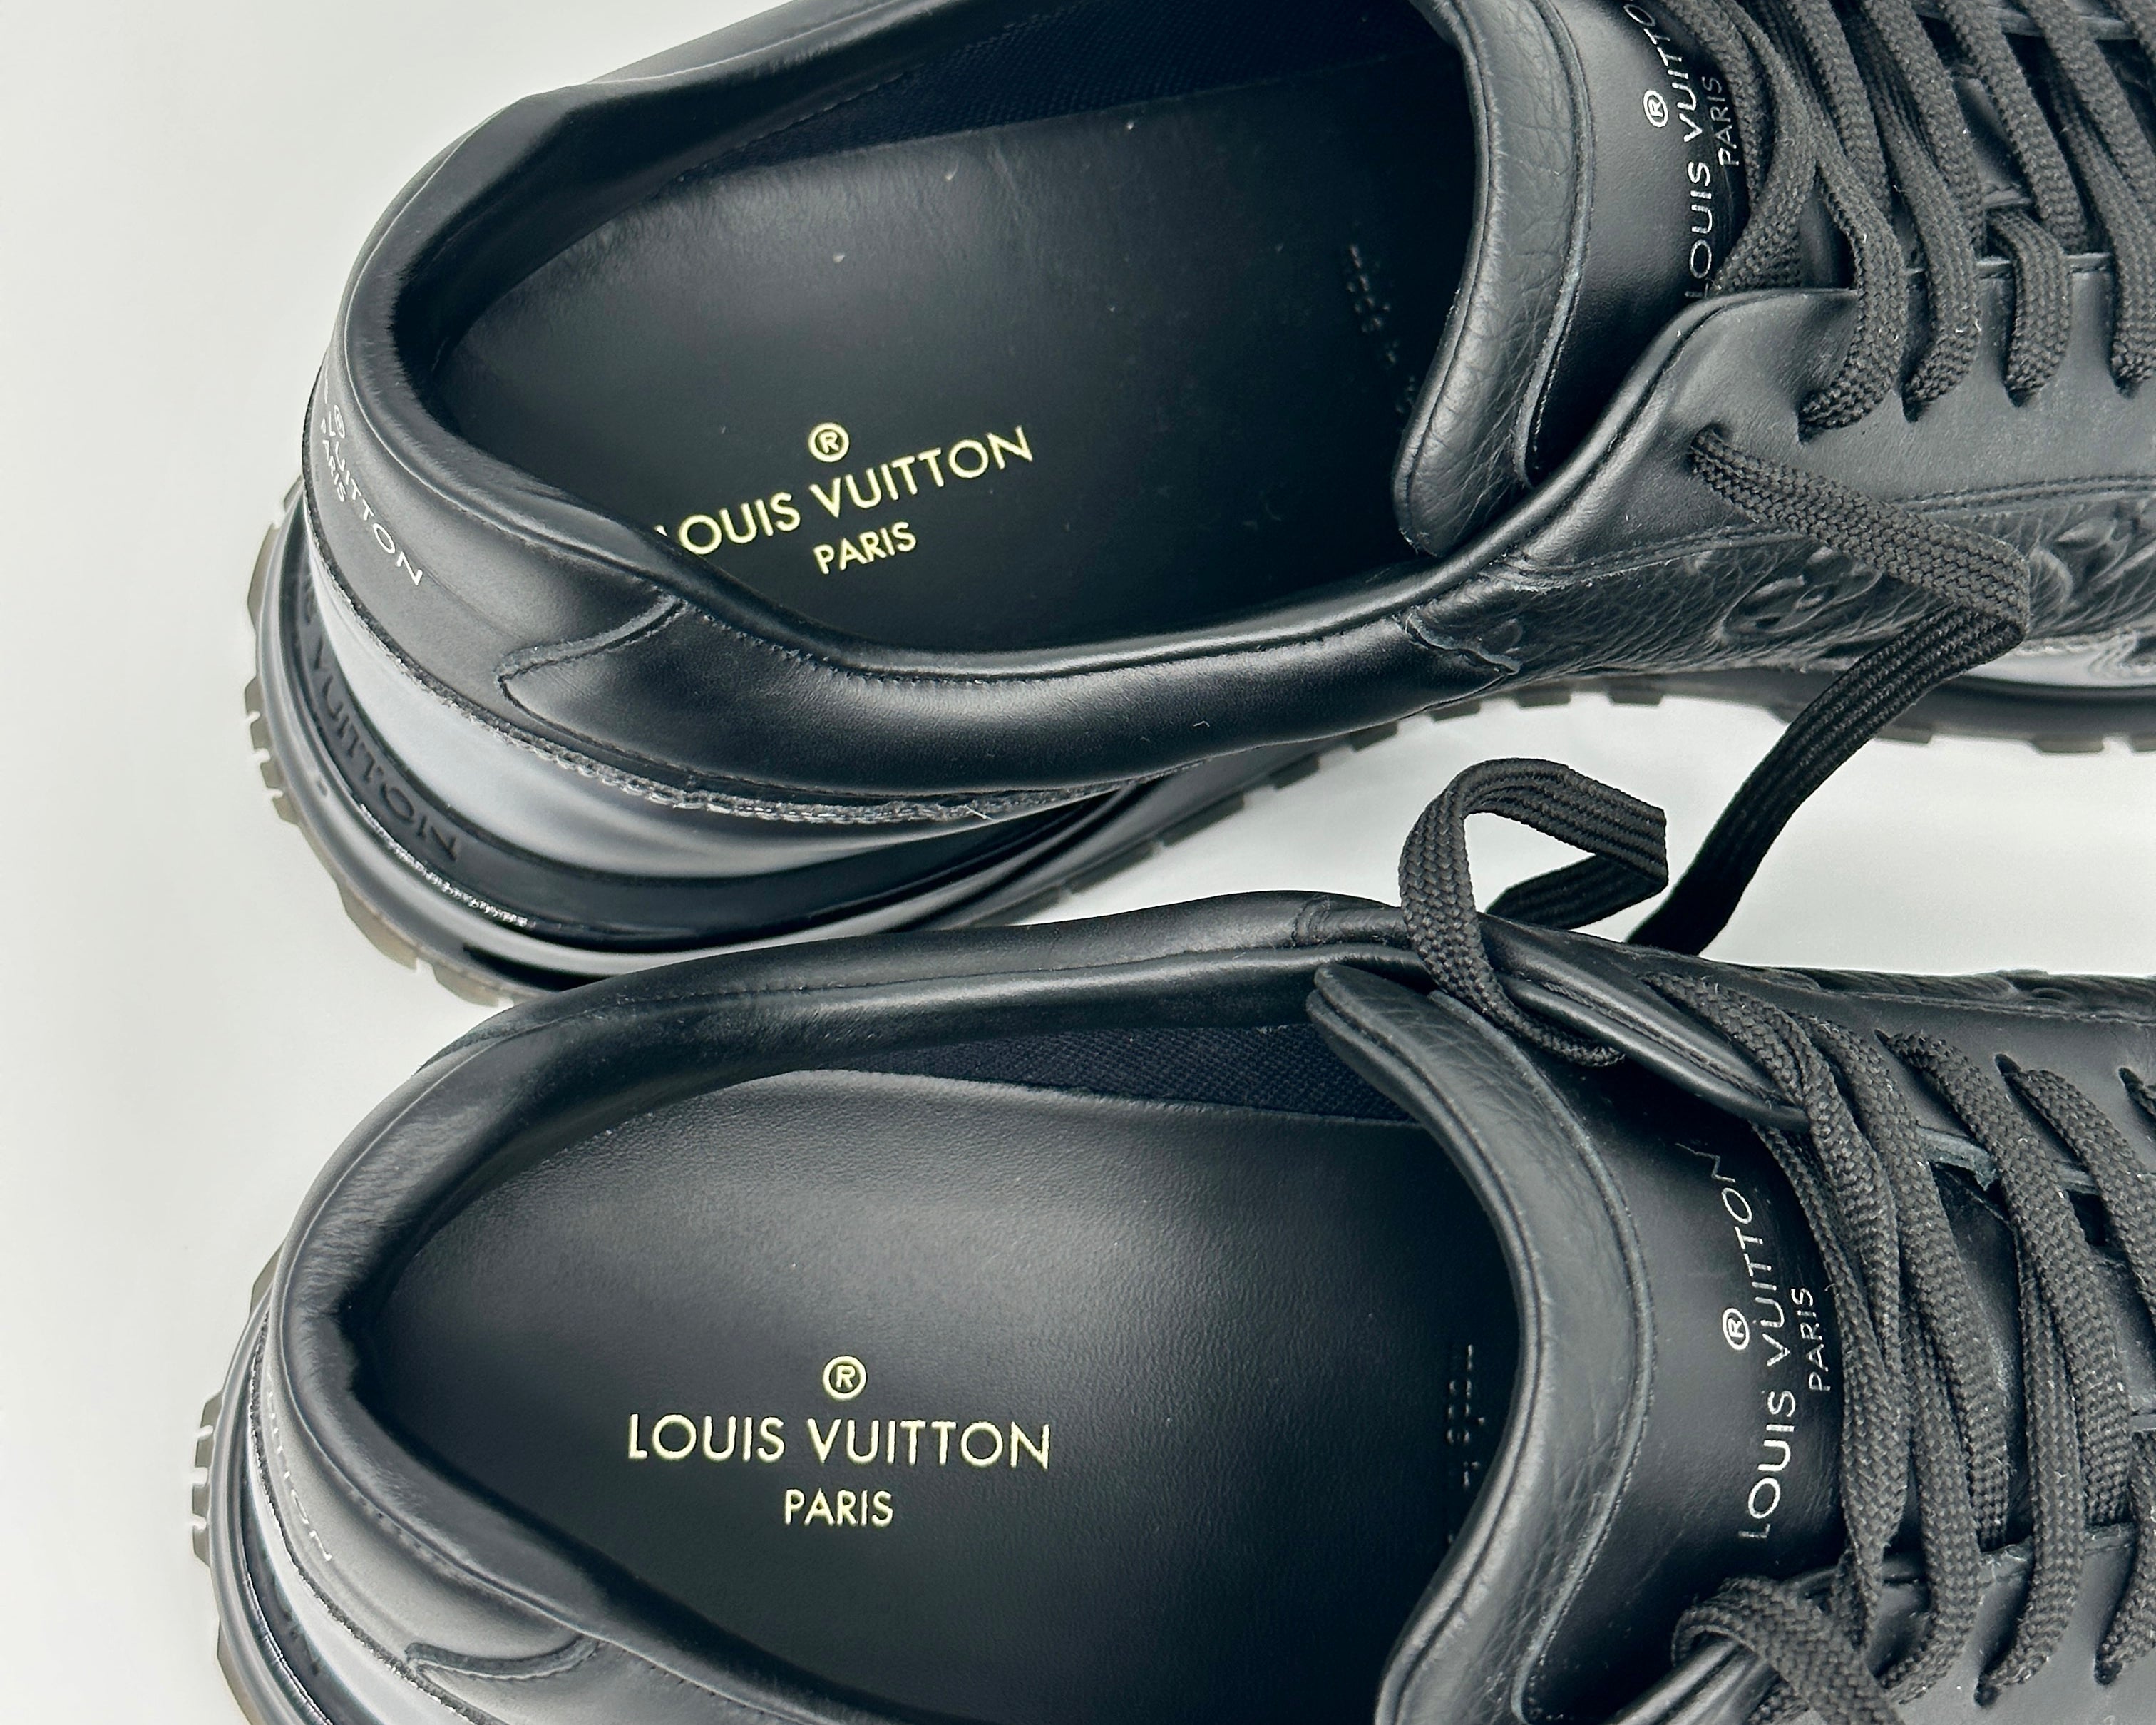 Louis Vuitton Baskets Run Away